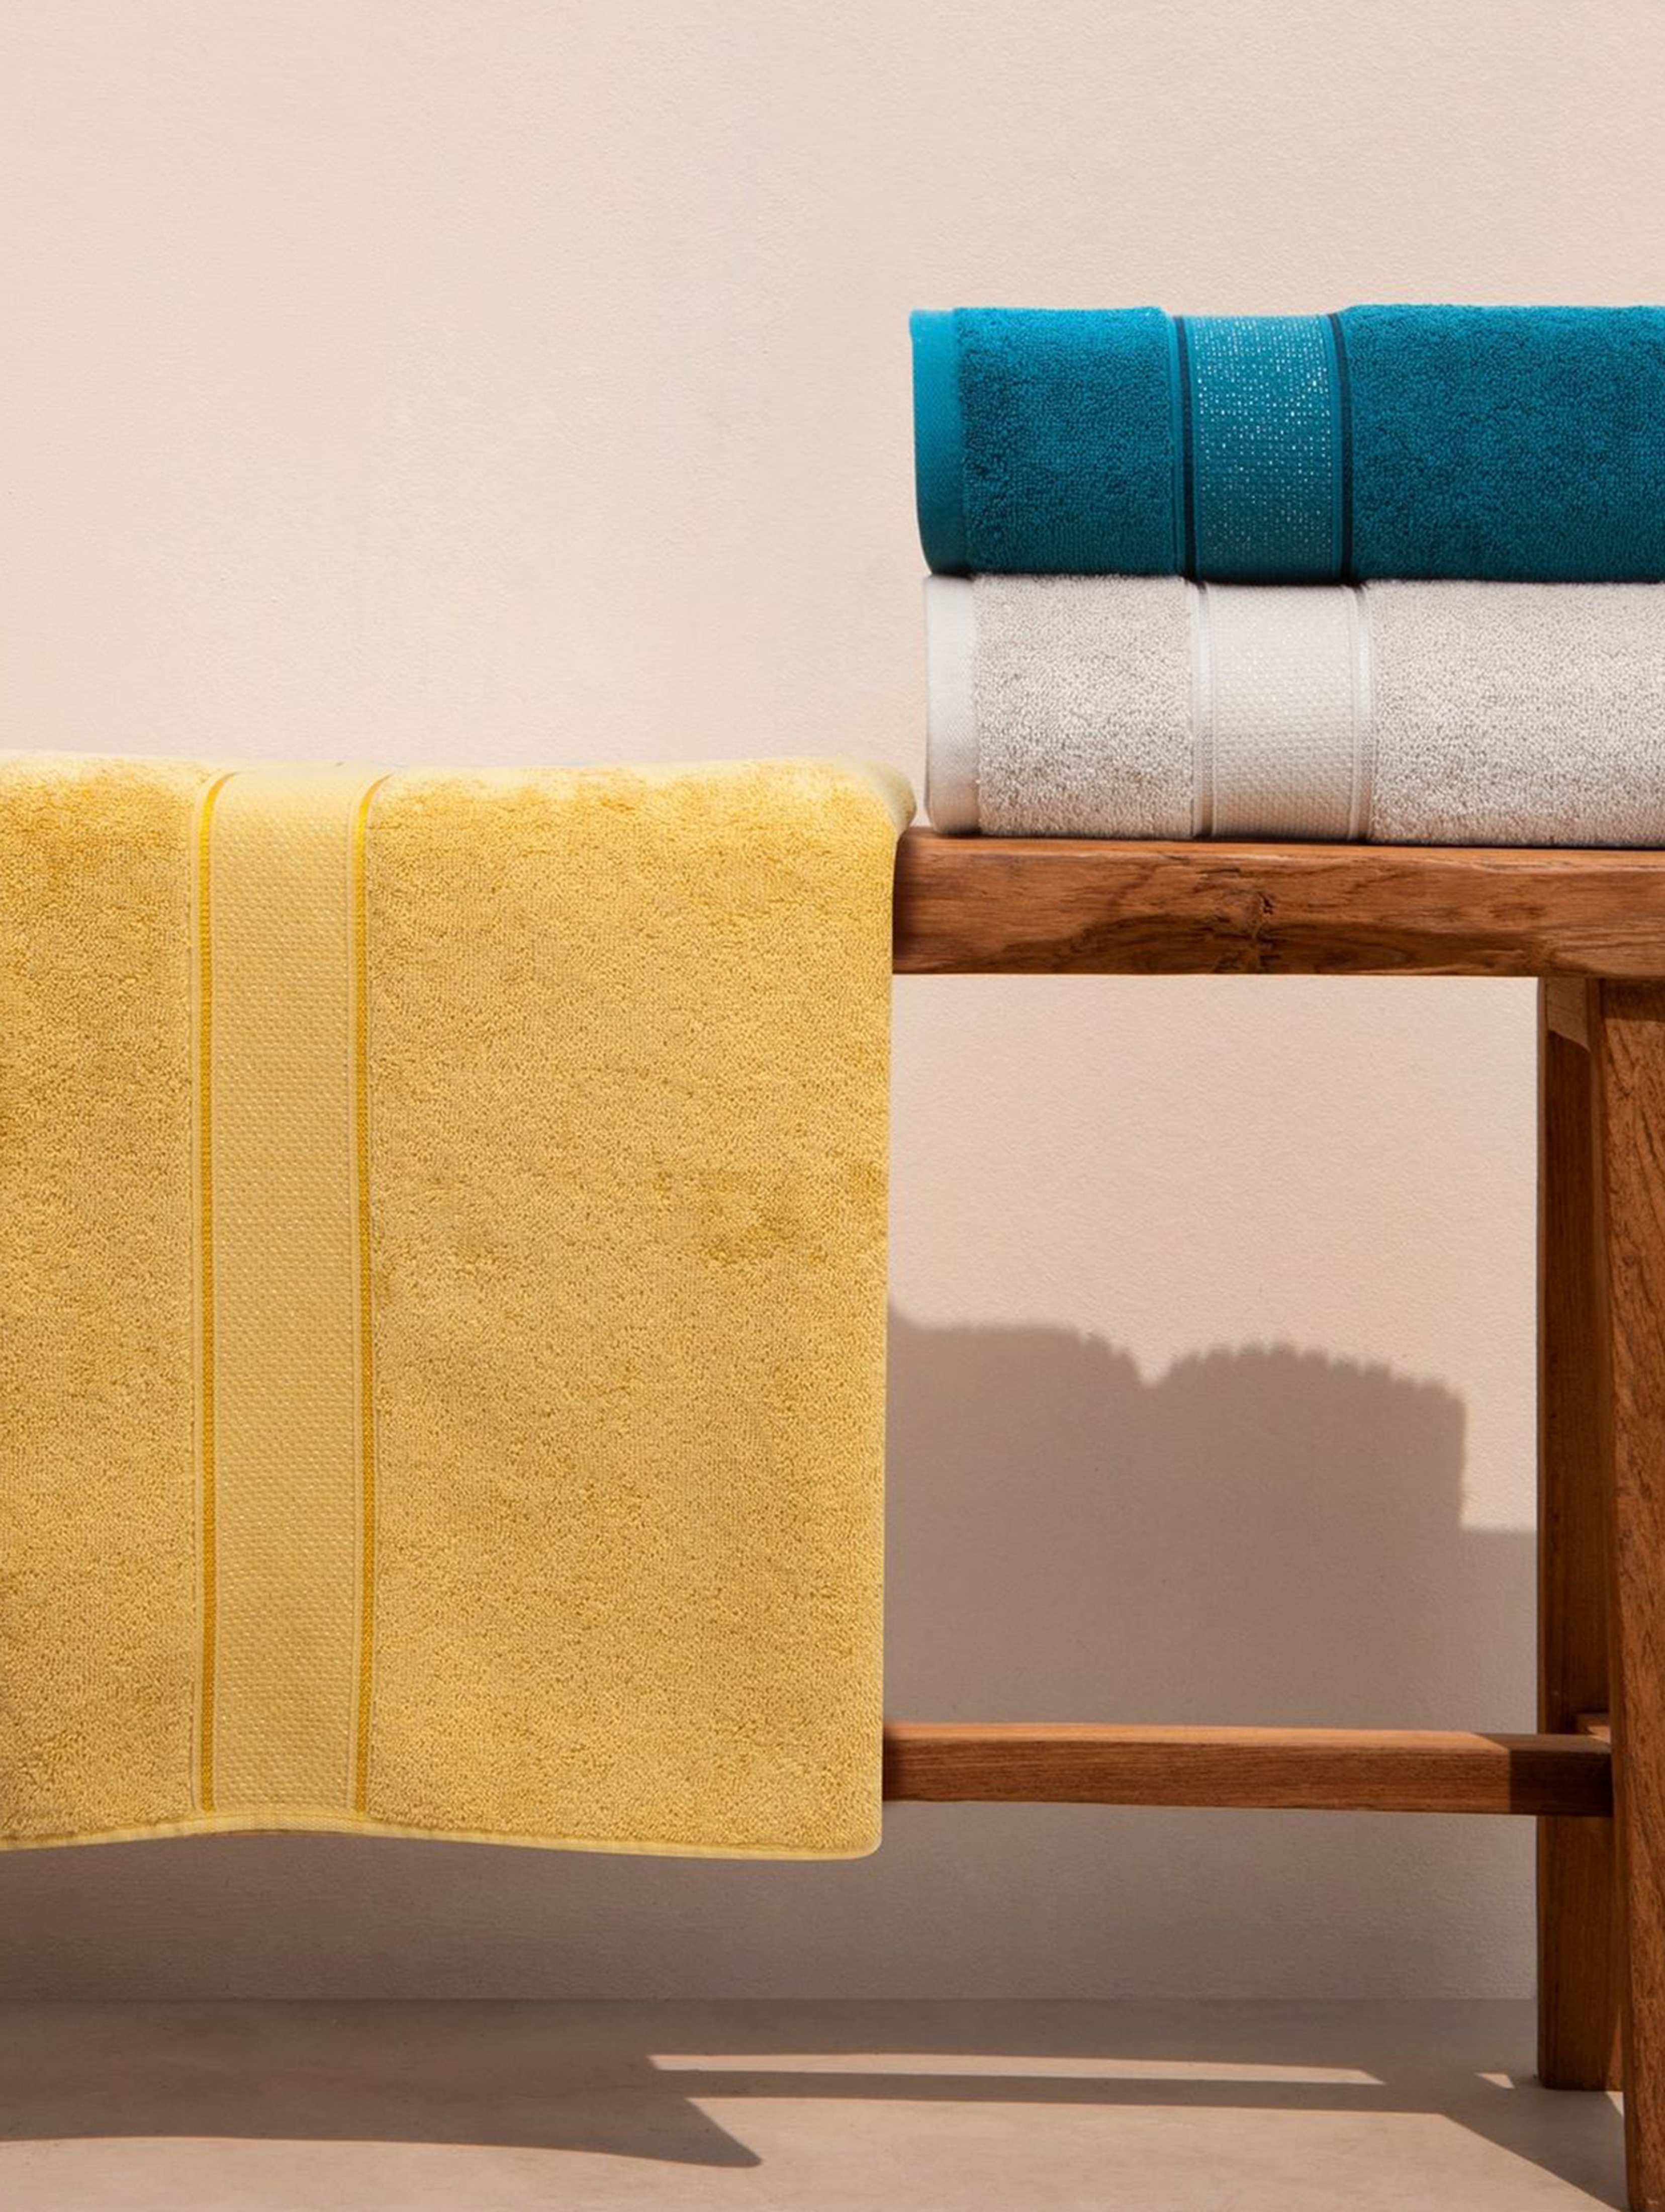 Ręcznik kąpielowy LIANA z bawełny 70x140 cm bordowy